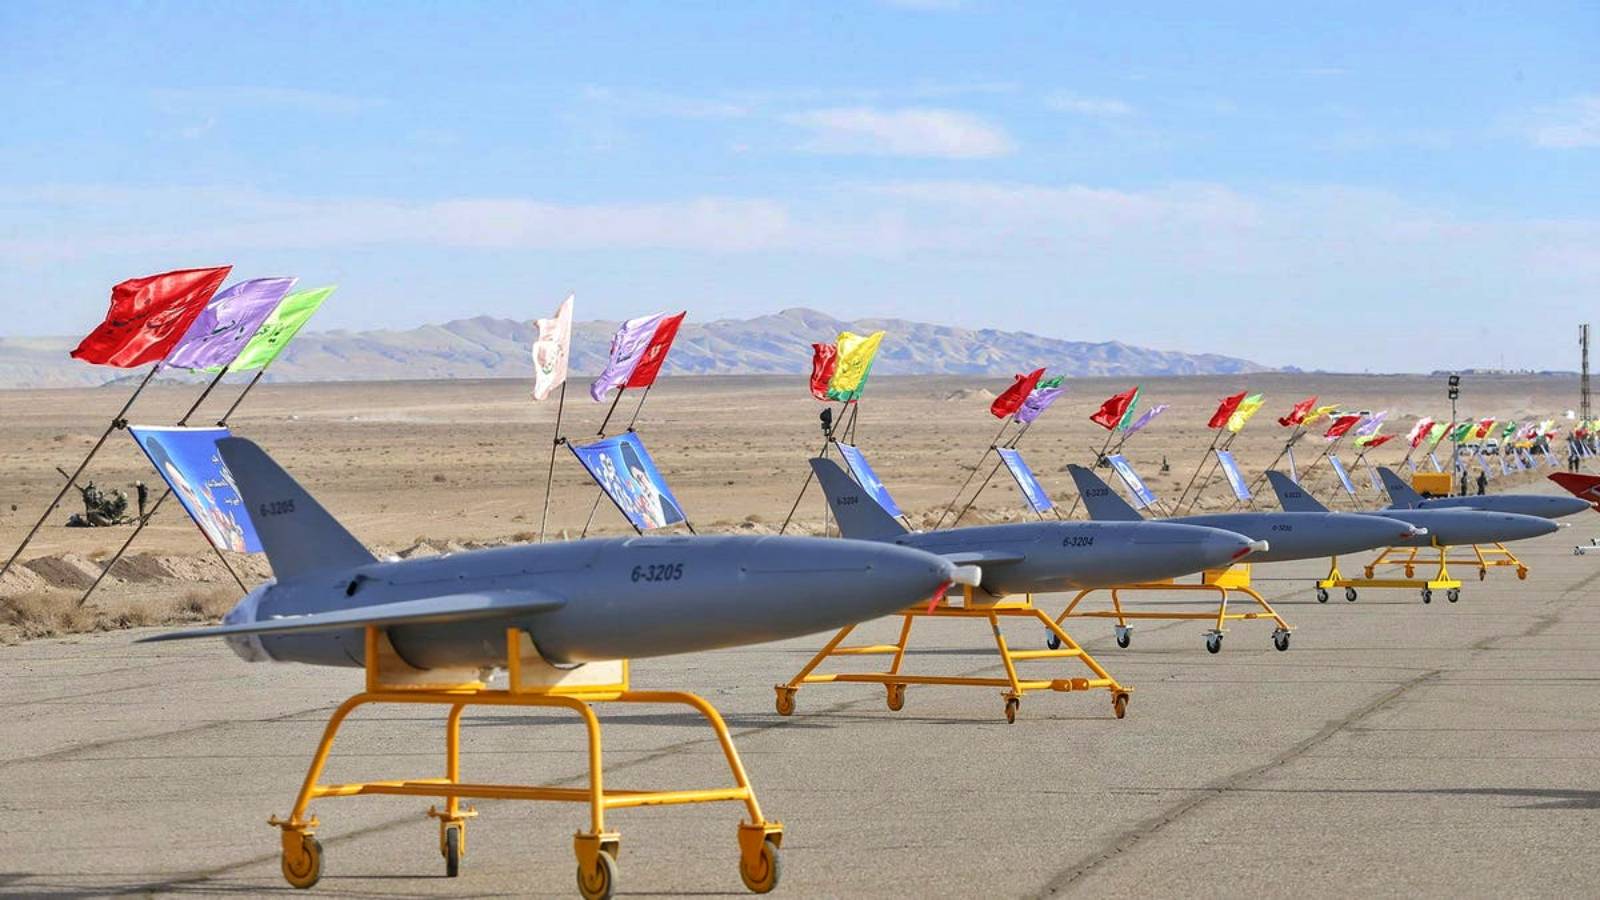 Secondo informazioni non ufficiali, l’Iran avrebbe inviato droni alla Russia per la guerra con l’Ucraina